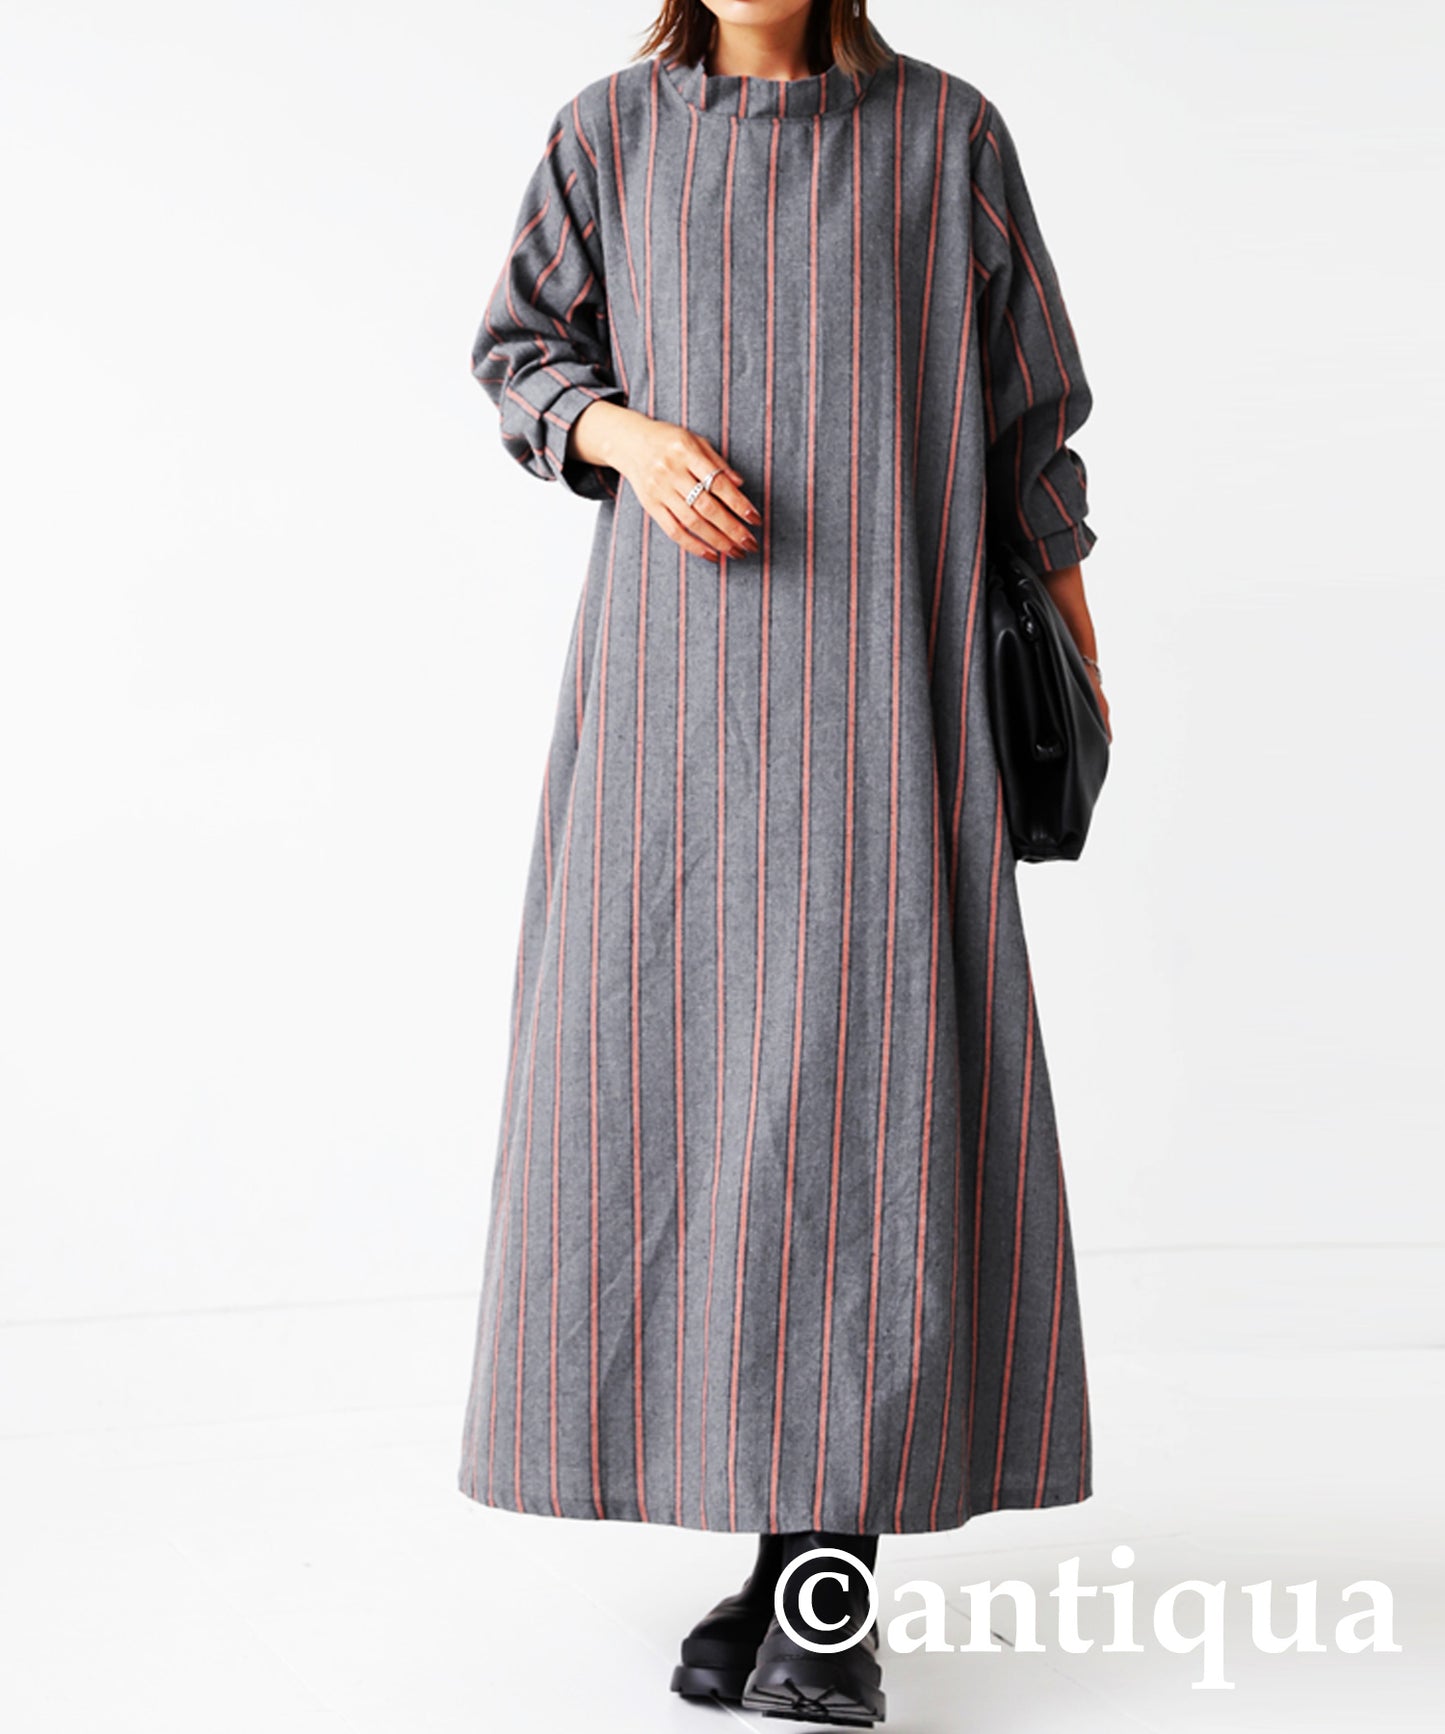 Ladies casual long dress long sleeve vertical stripe